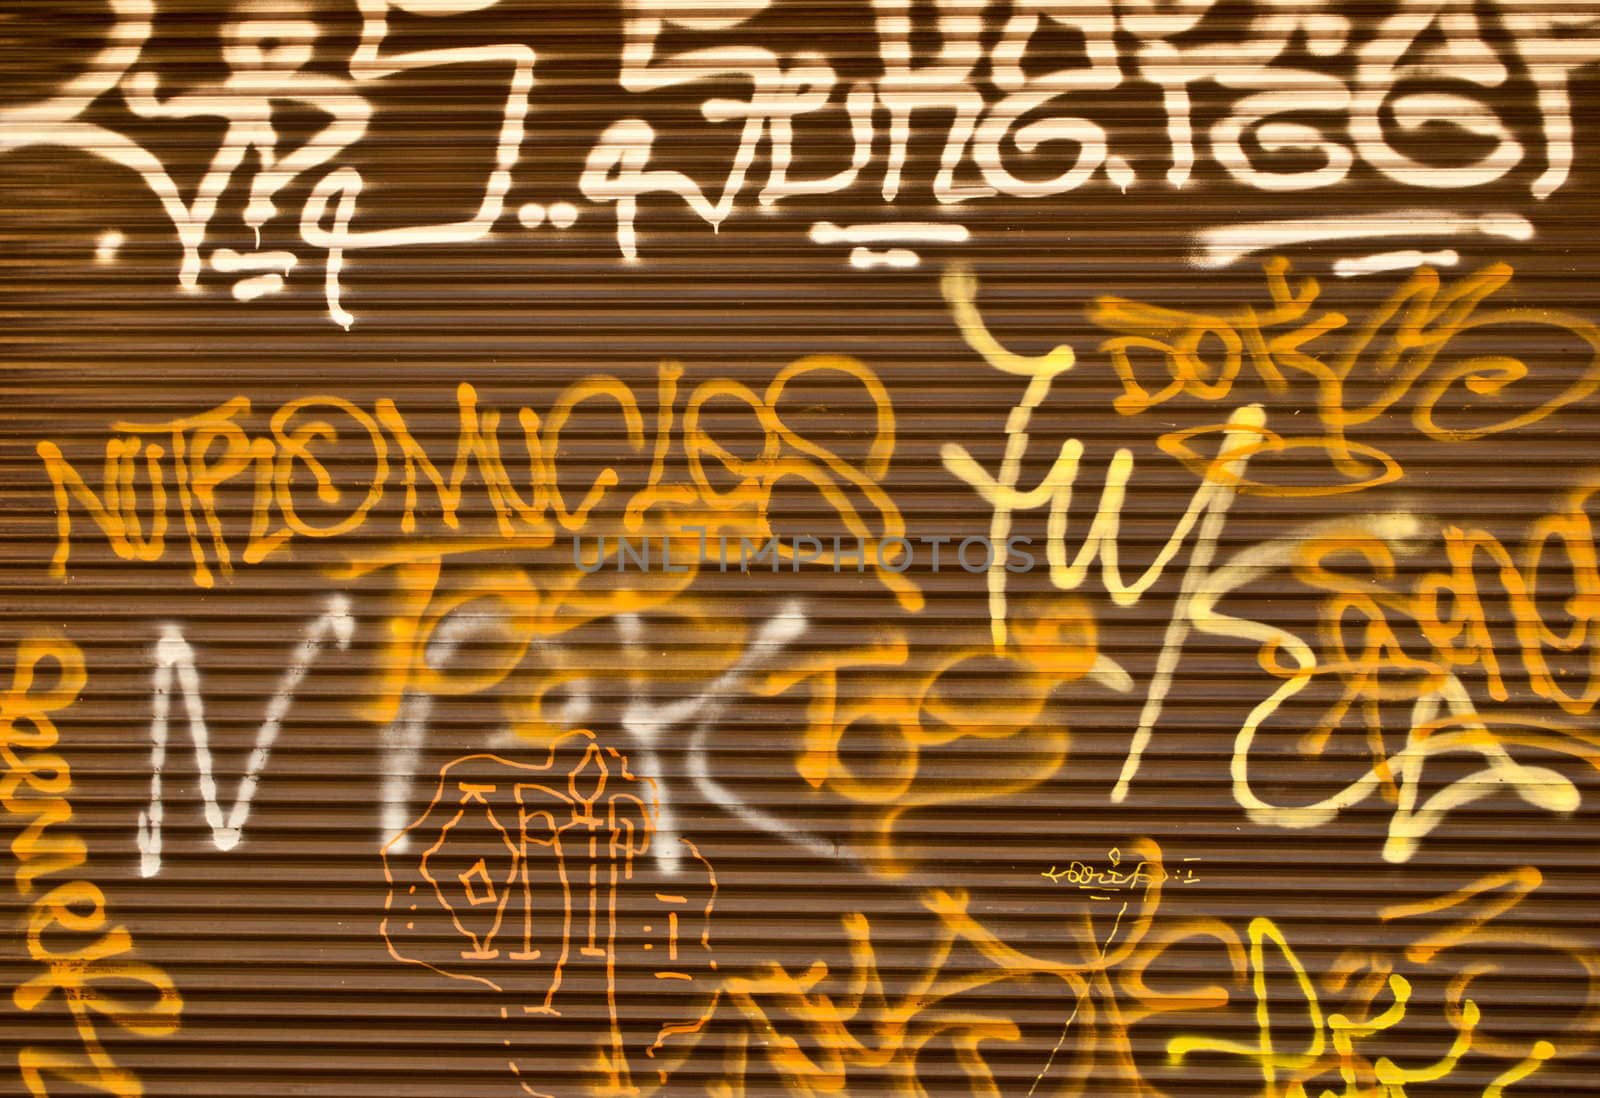 Grafitti wall by robertblaga